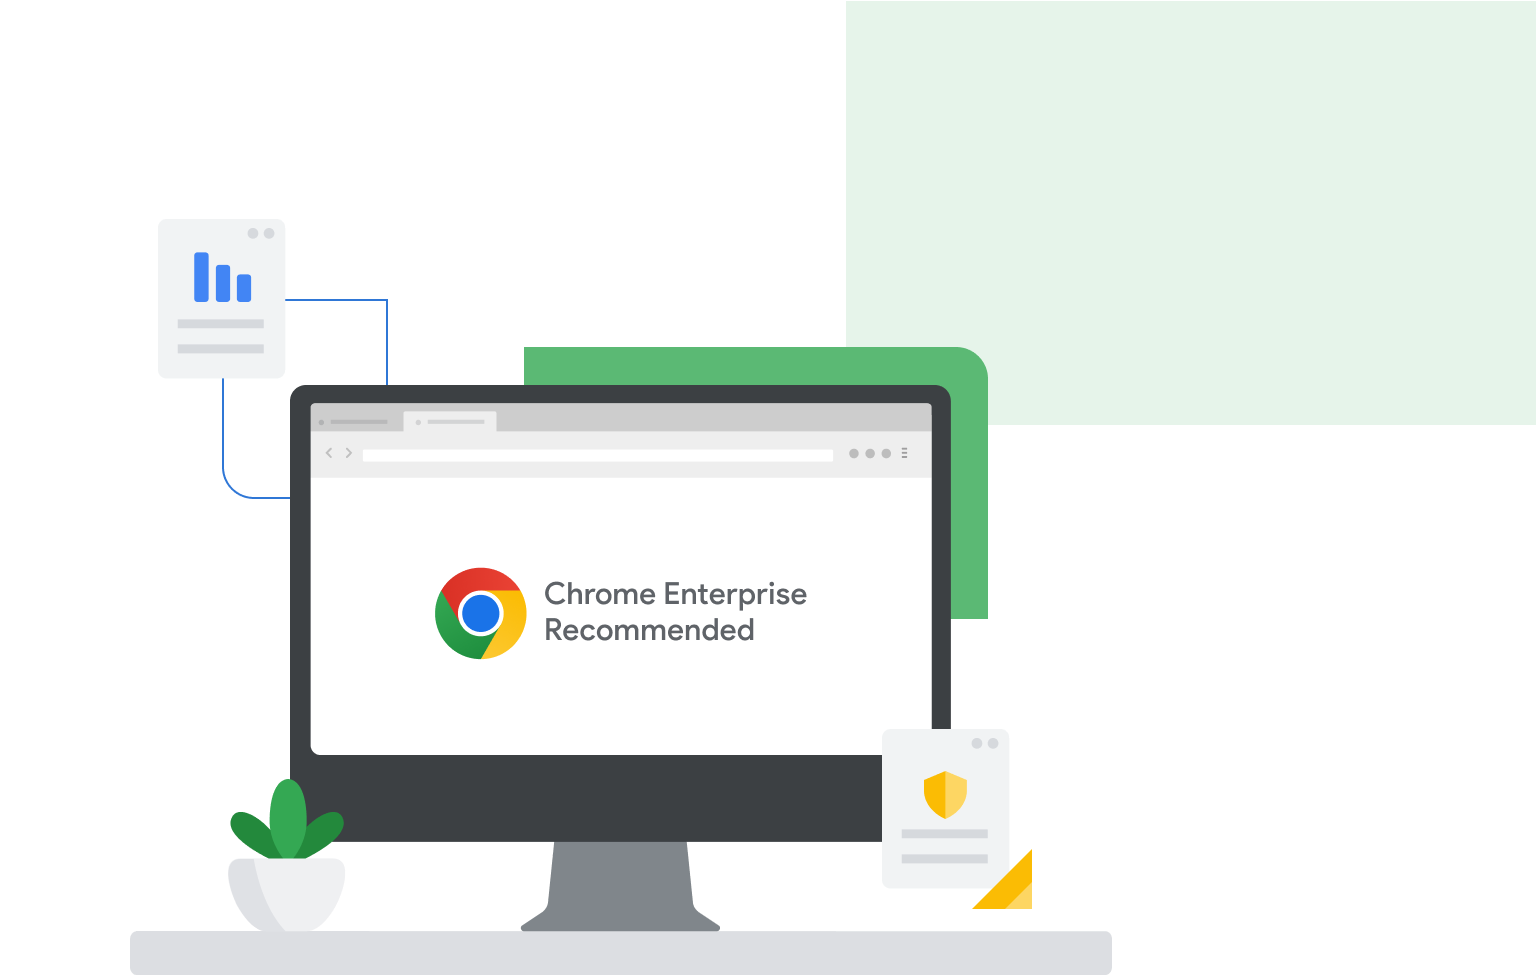 電腦螢幕上顯示「Chrome Enterprise Recommended」，螢幕旁則是分別顯示長條圖和盾牌的網頁。